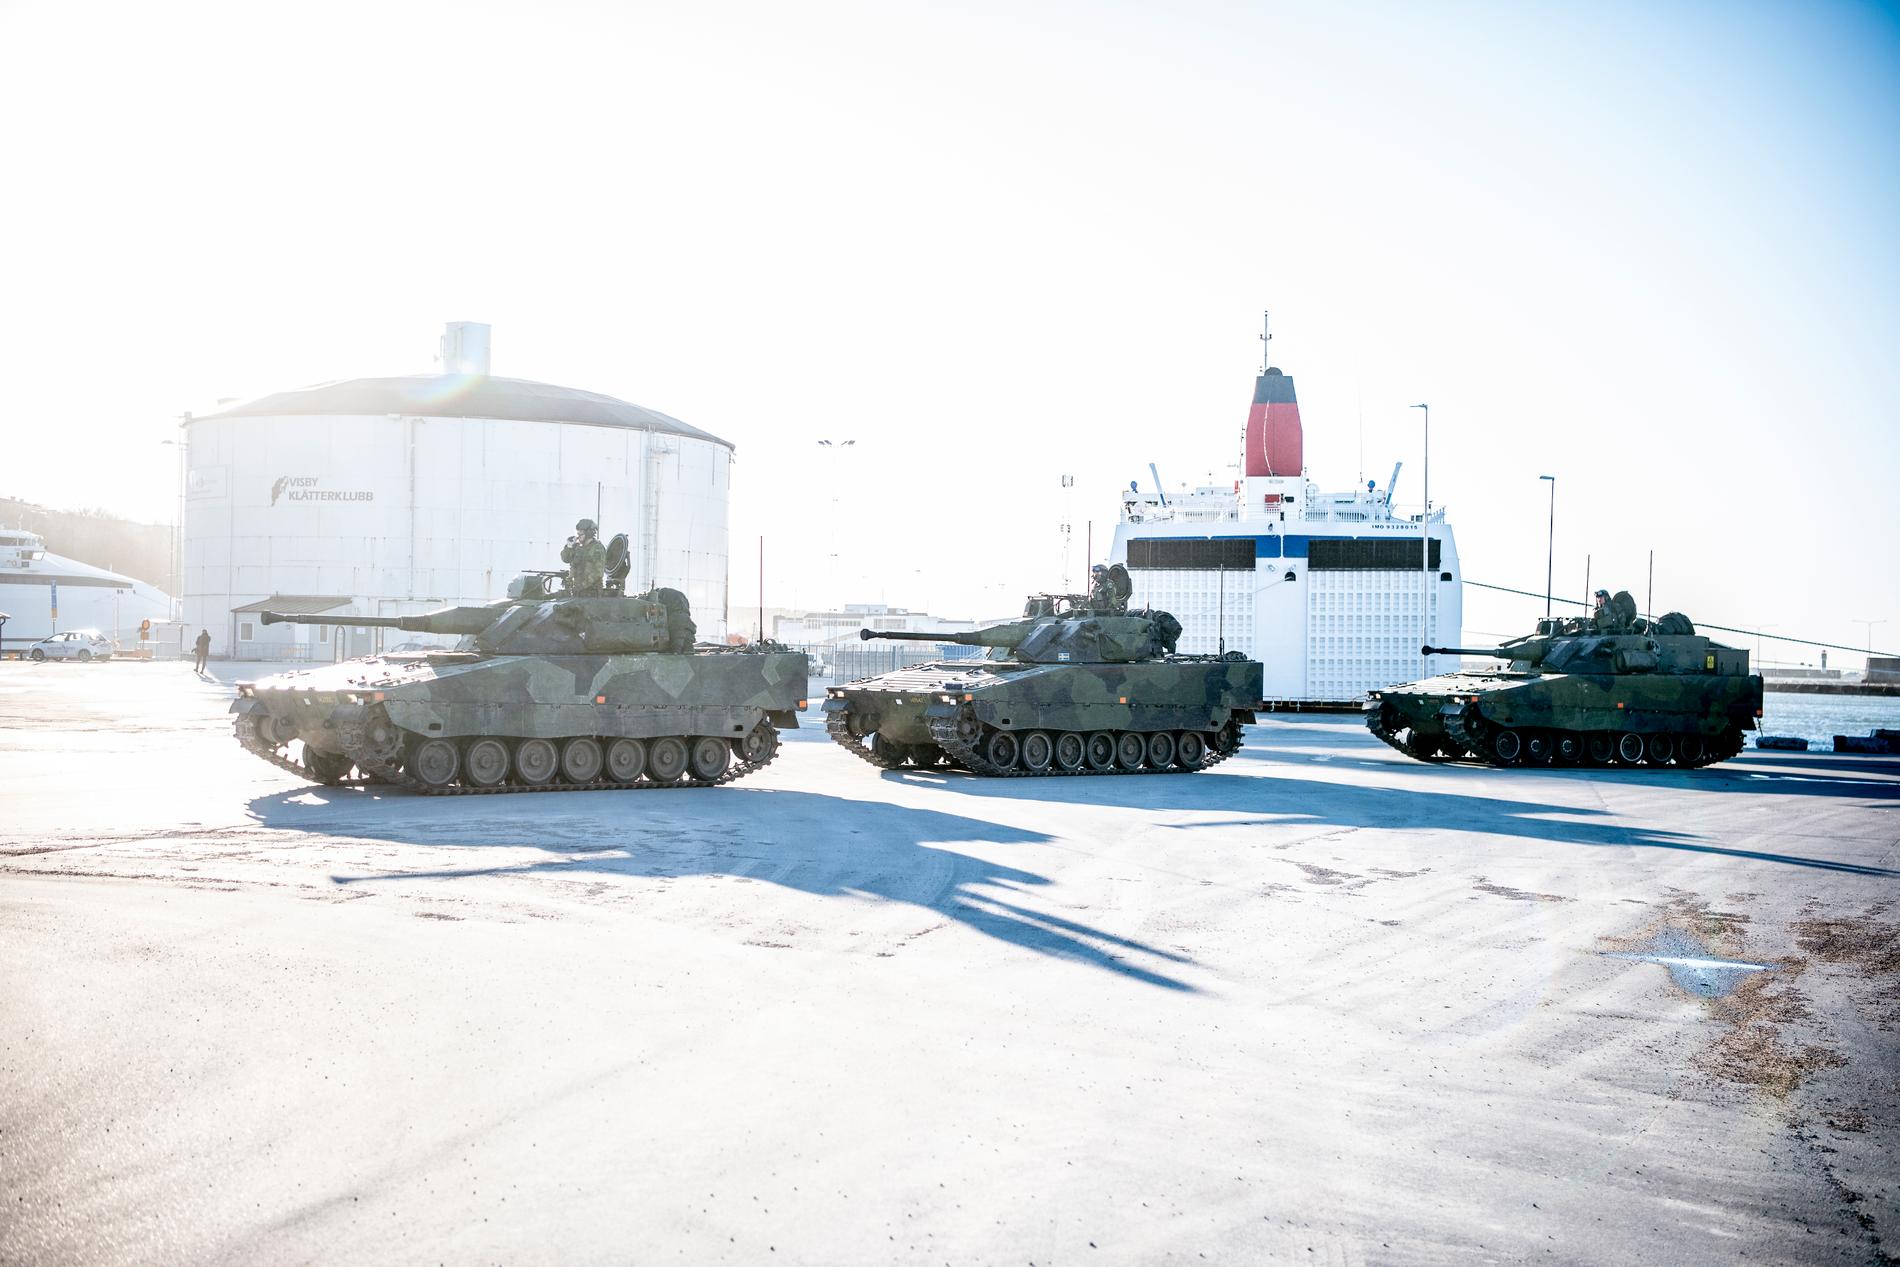 ”Själva vitsen med att dagtid låta stridsvagnar rulla på Gotland är att alla ska se det”, skriver Wolfgang Hansson. 